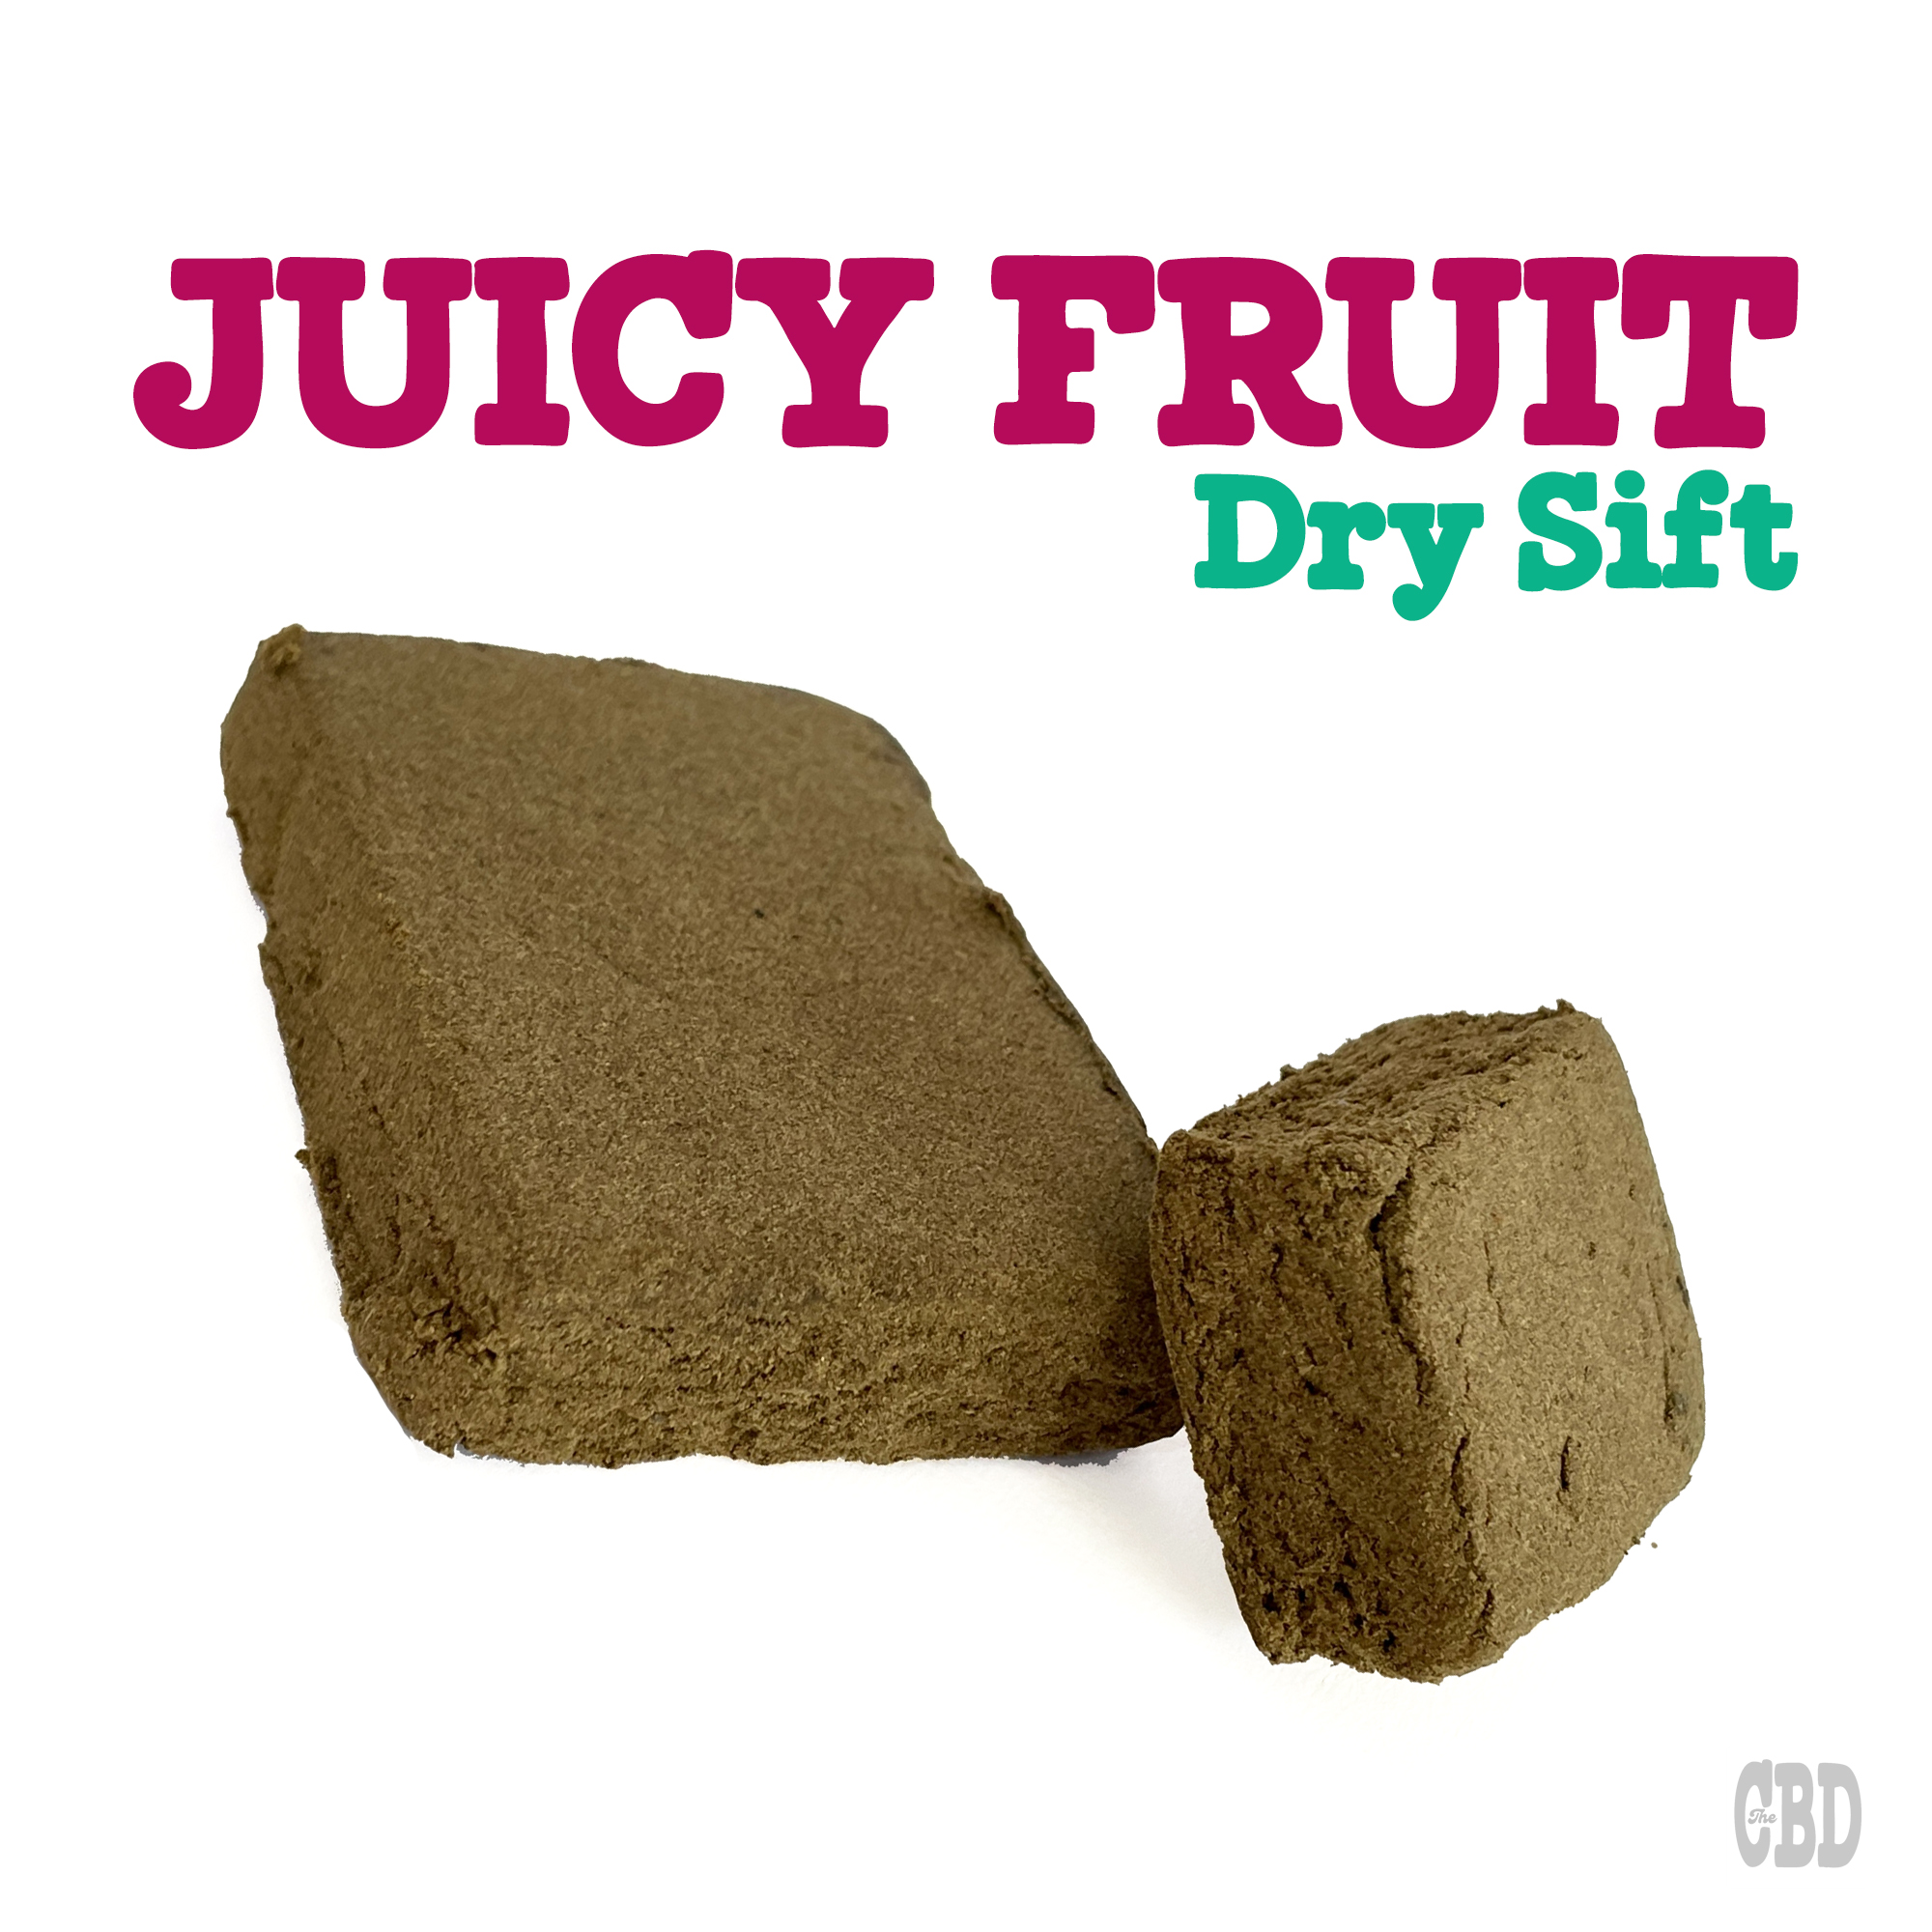 DRY JUICY FRUIT - Pollen CBD